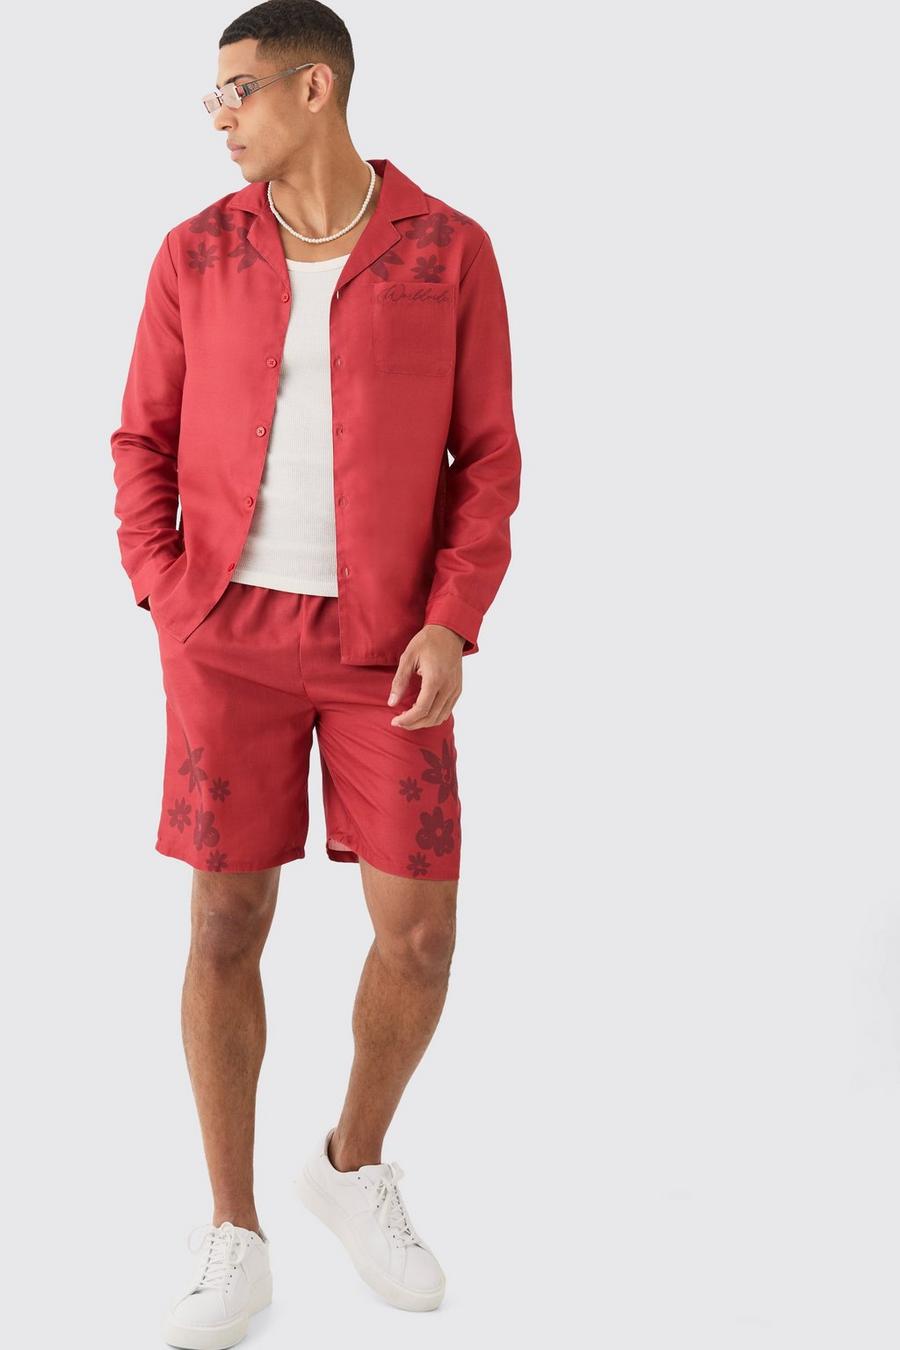 Red Monochrome Linnen Look Bloemen Overhemd Met Schouders En Shorts